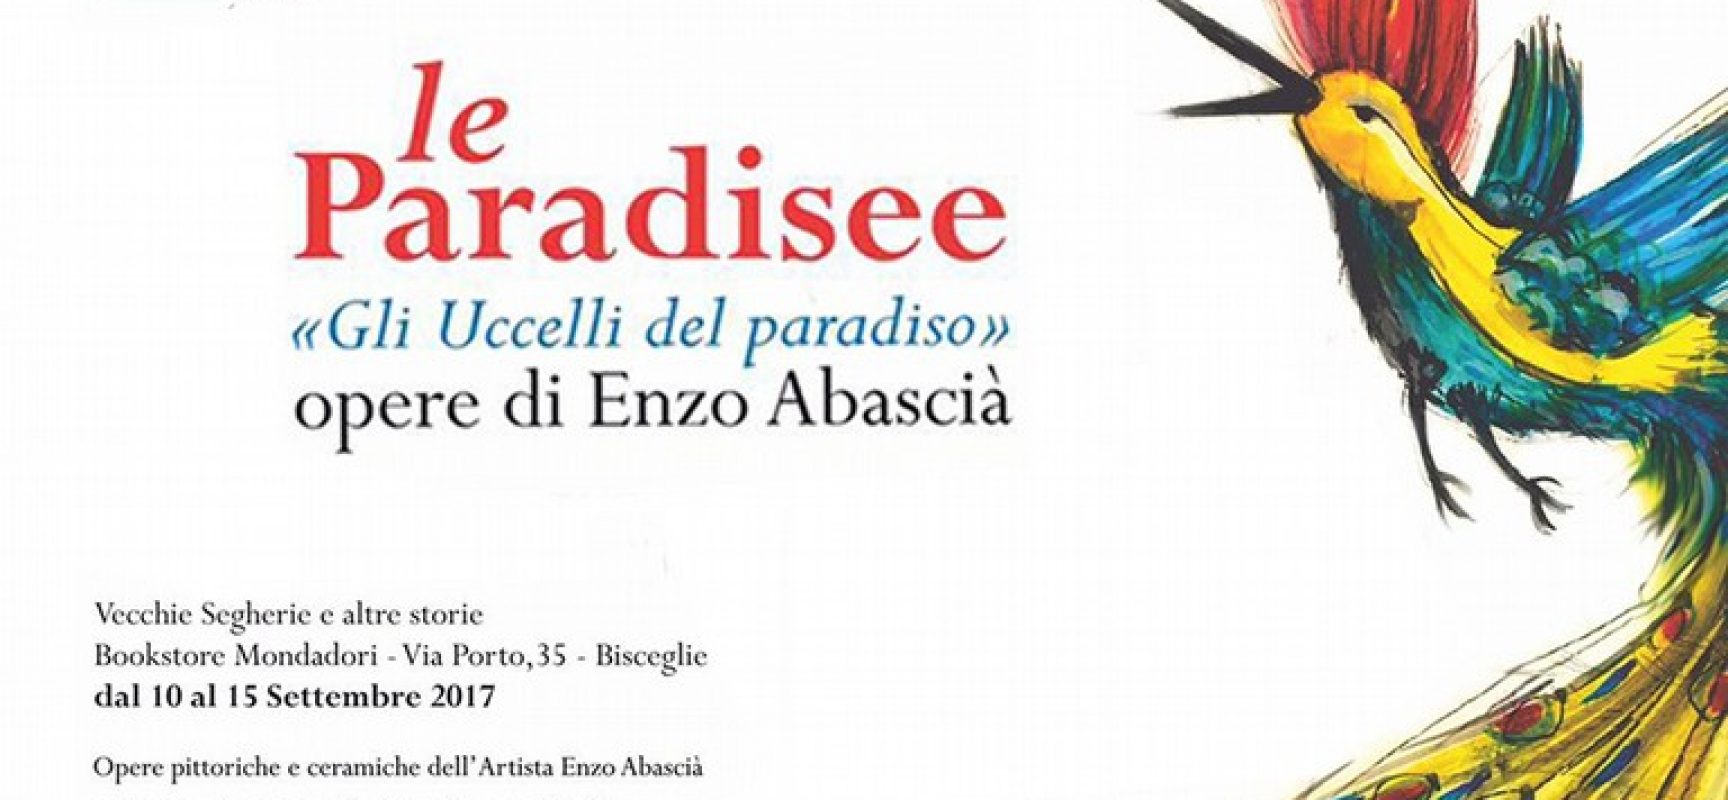 Le Paradisee, personale di Enzo Abascià alle Vecchie Segherie